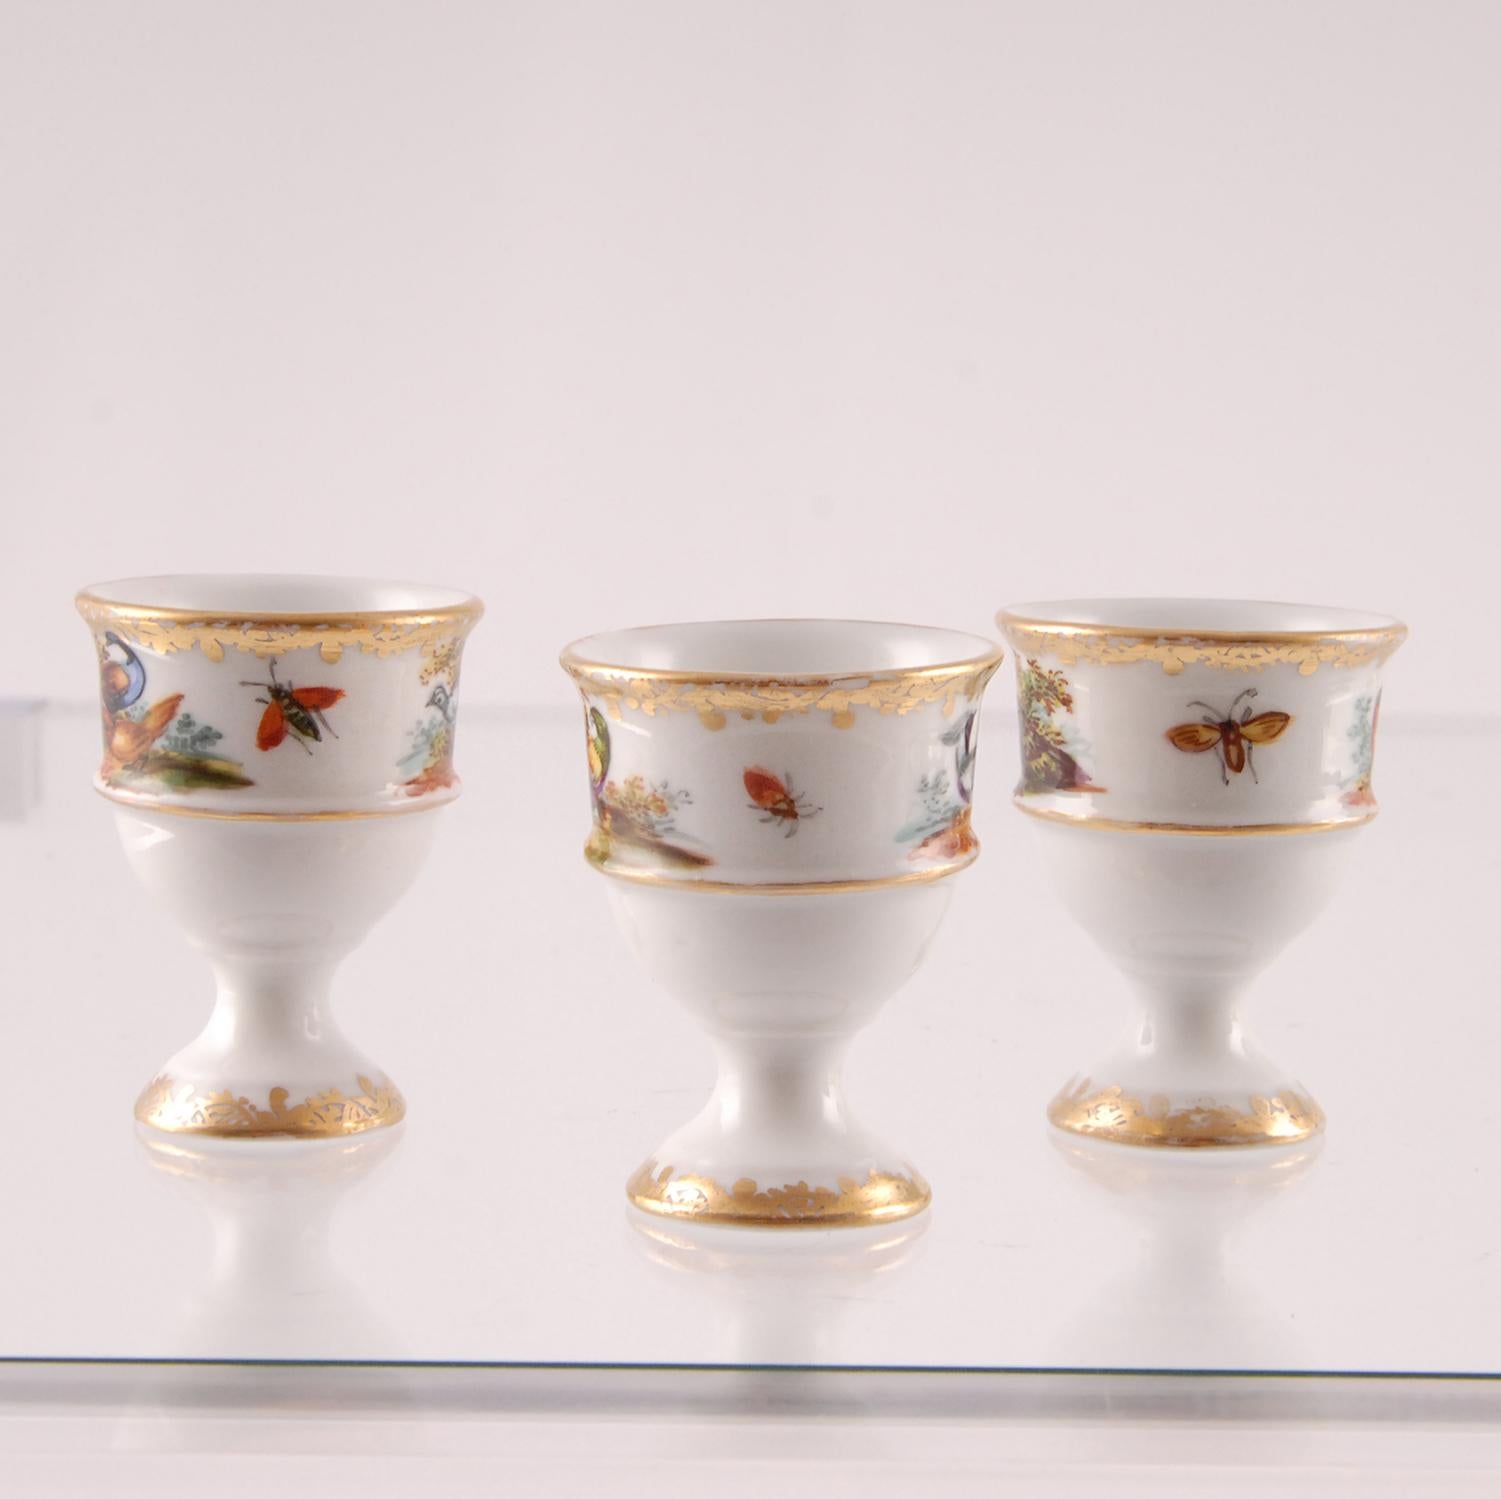 Ceramic Porcelain Egg Stand Cruet 18th century Meissen Style Victorian German Handmade